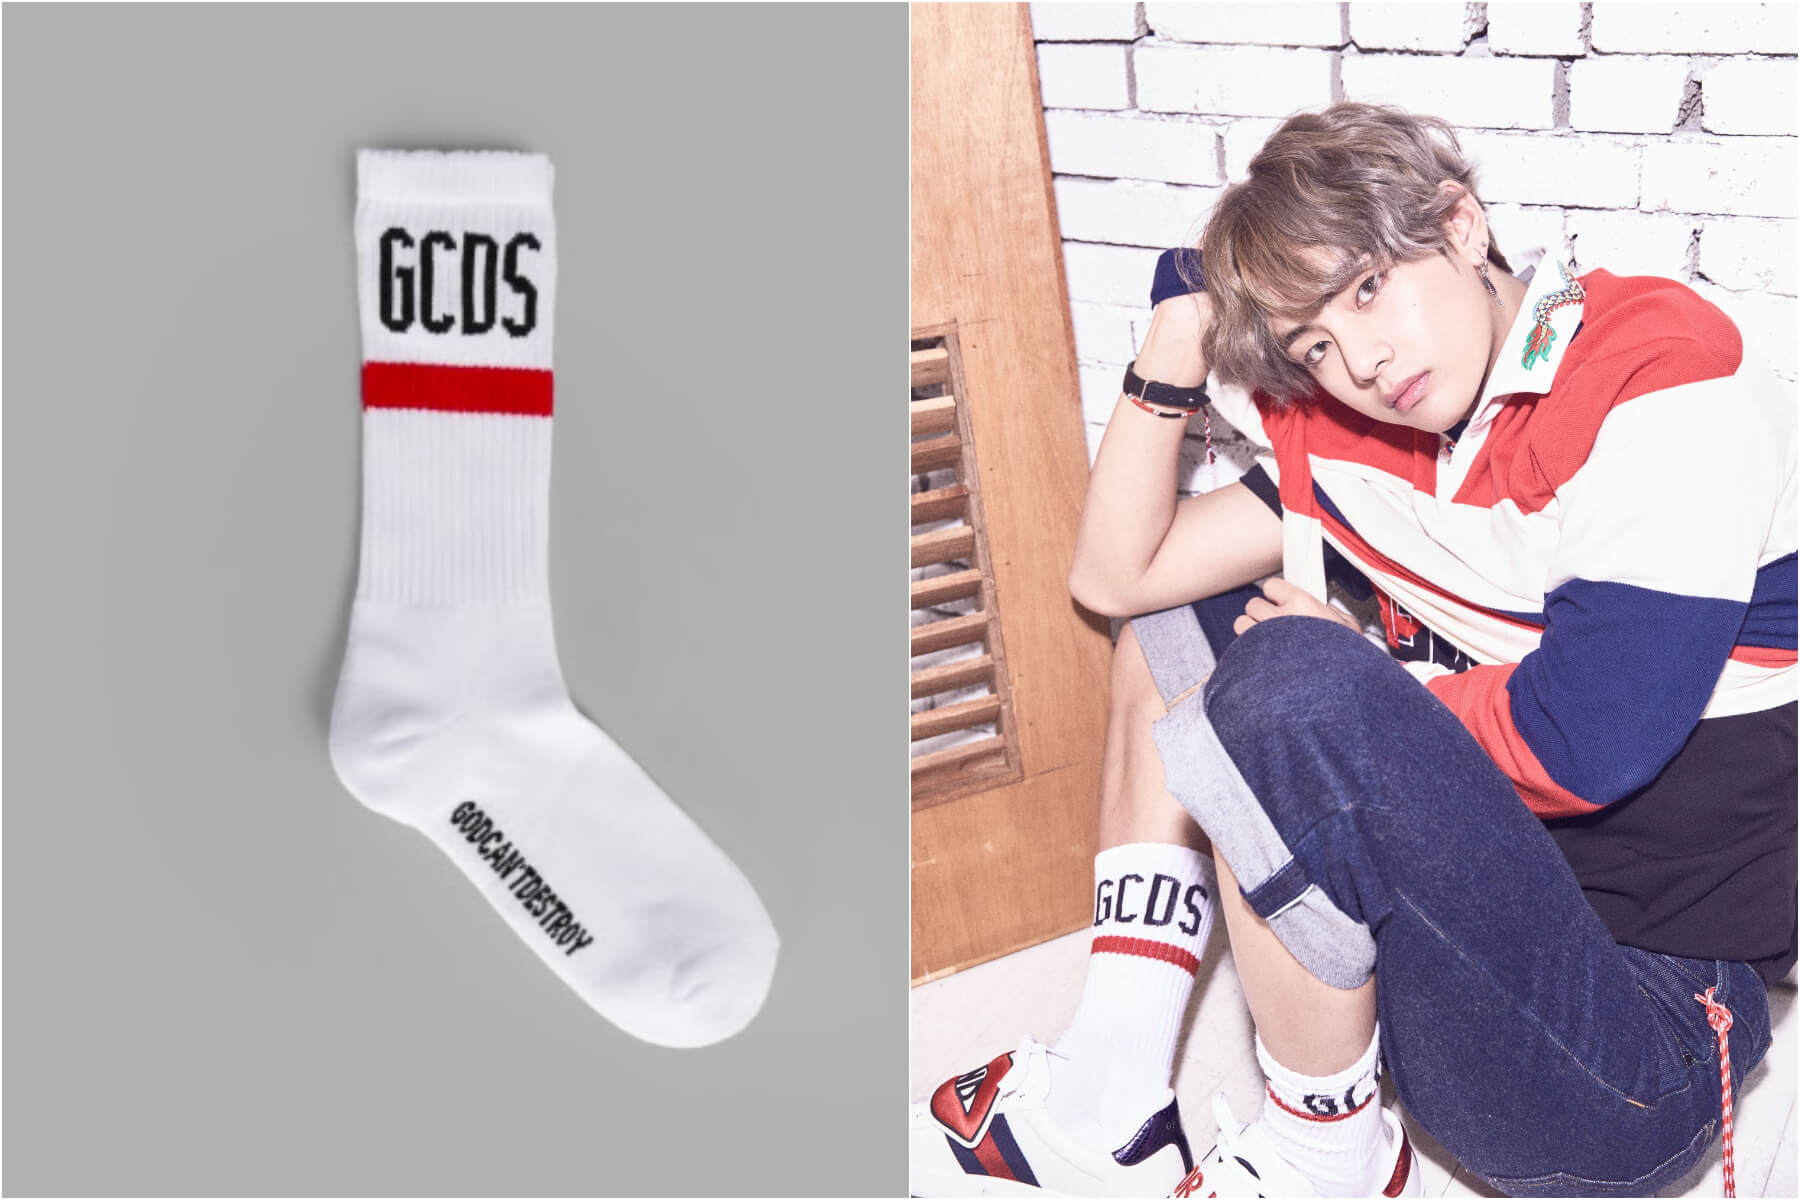 V BTS – GCDS Socks ($39 USD)